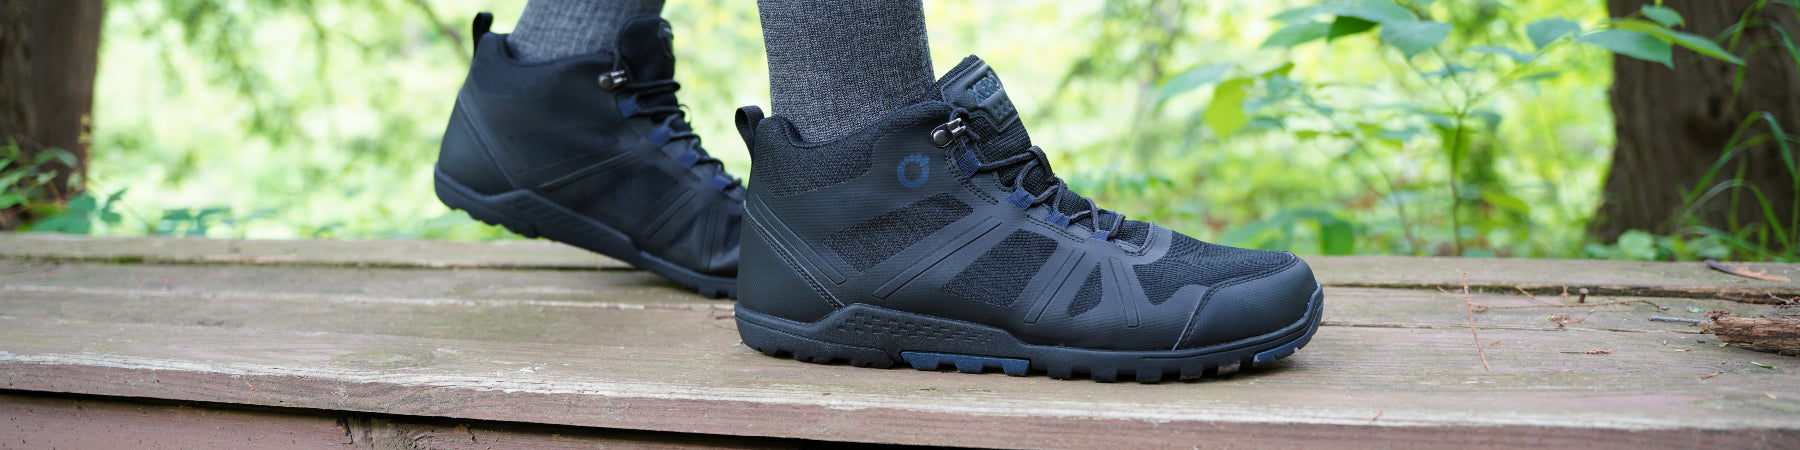 Men's Xero DayLite Hiker Boots | Natural Footgear